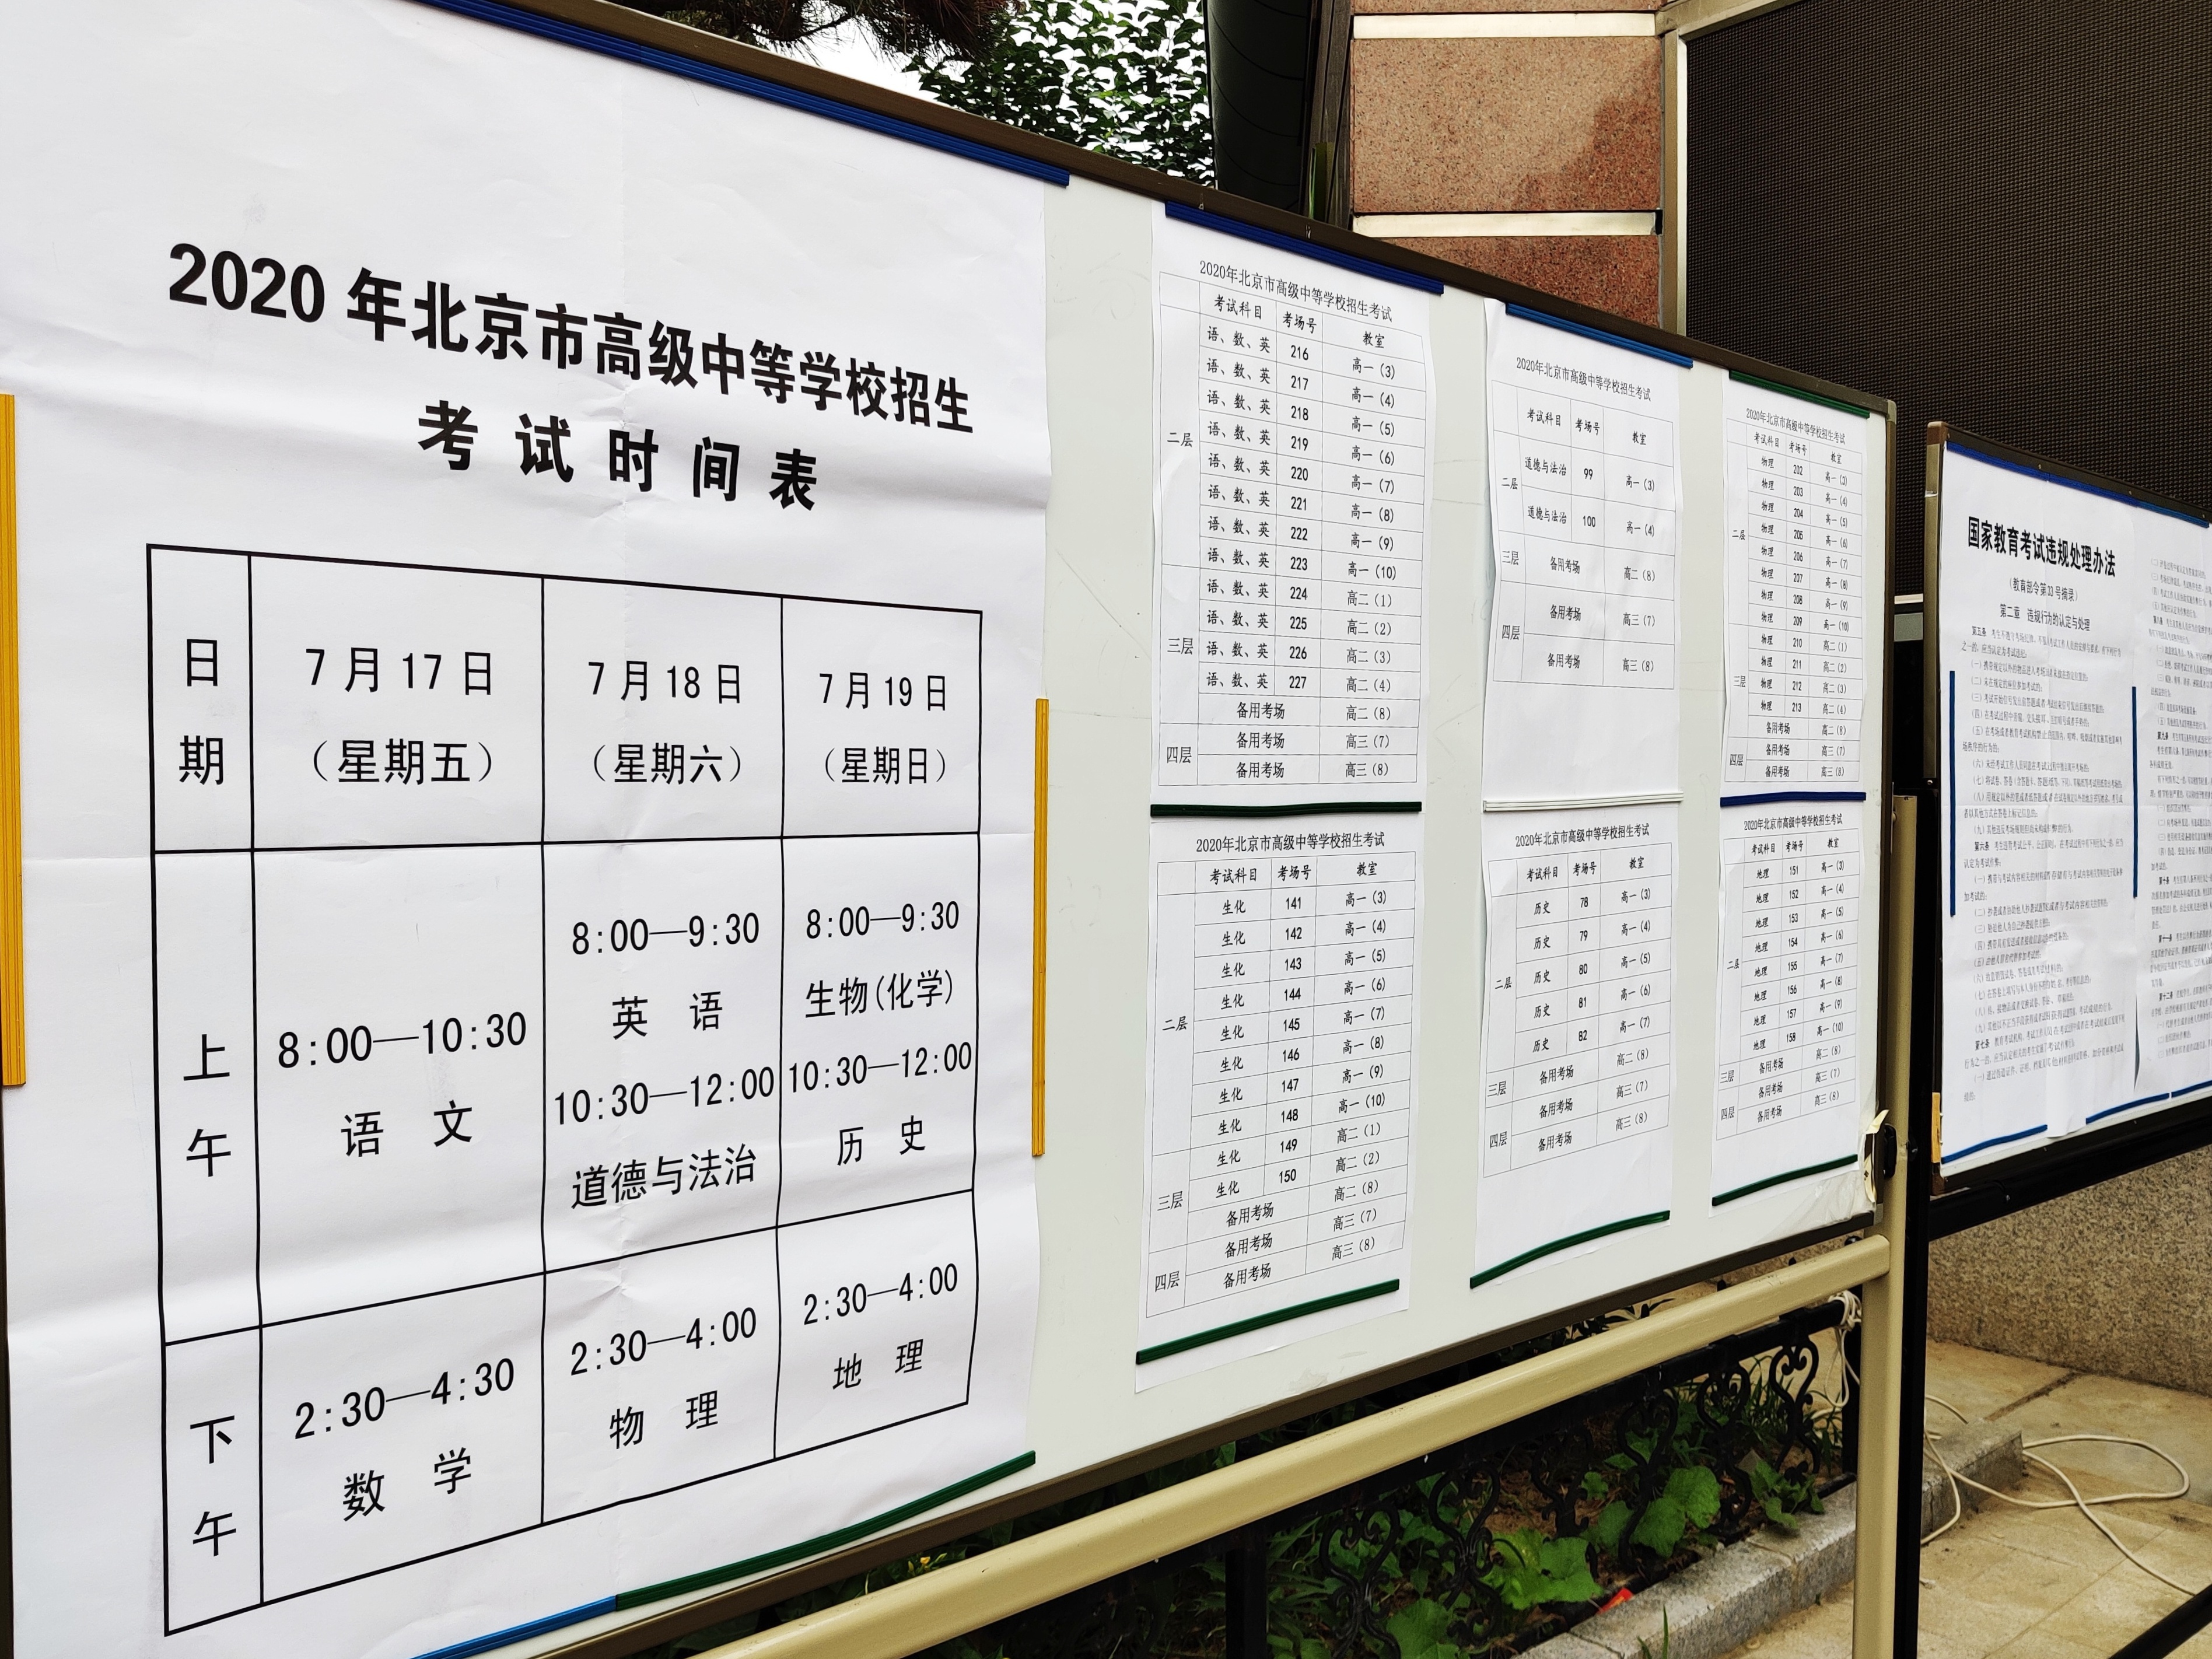 北京十八中考点外展示的中考时间表与考场安排情况。